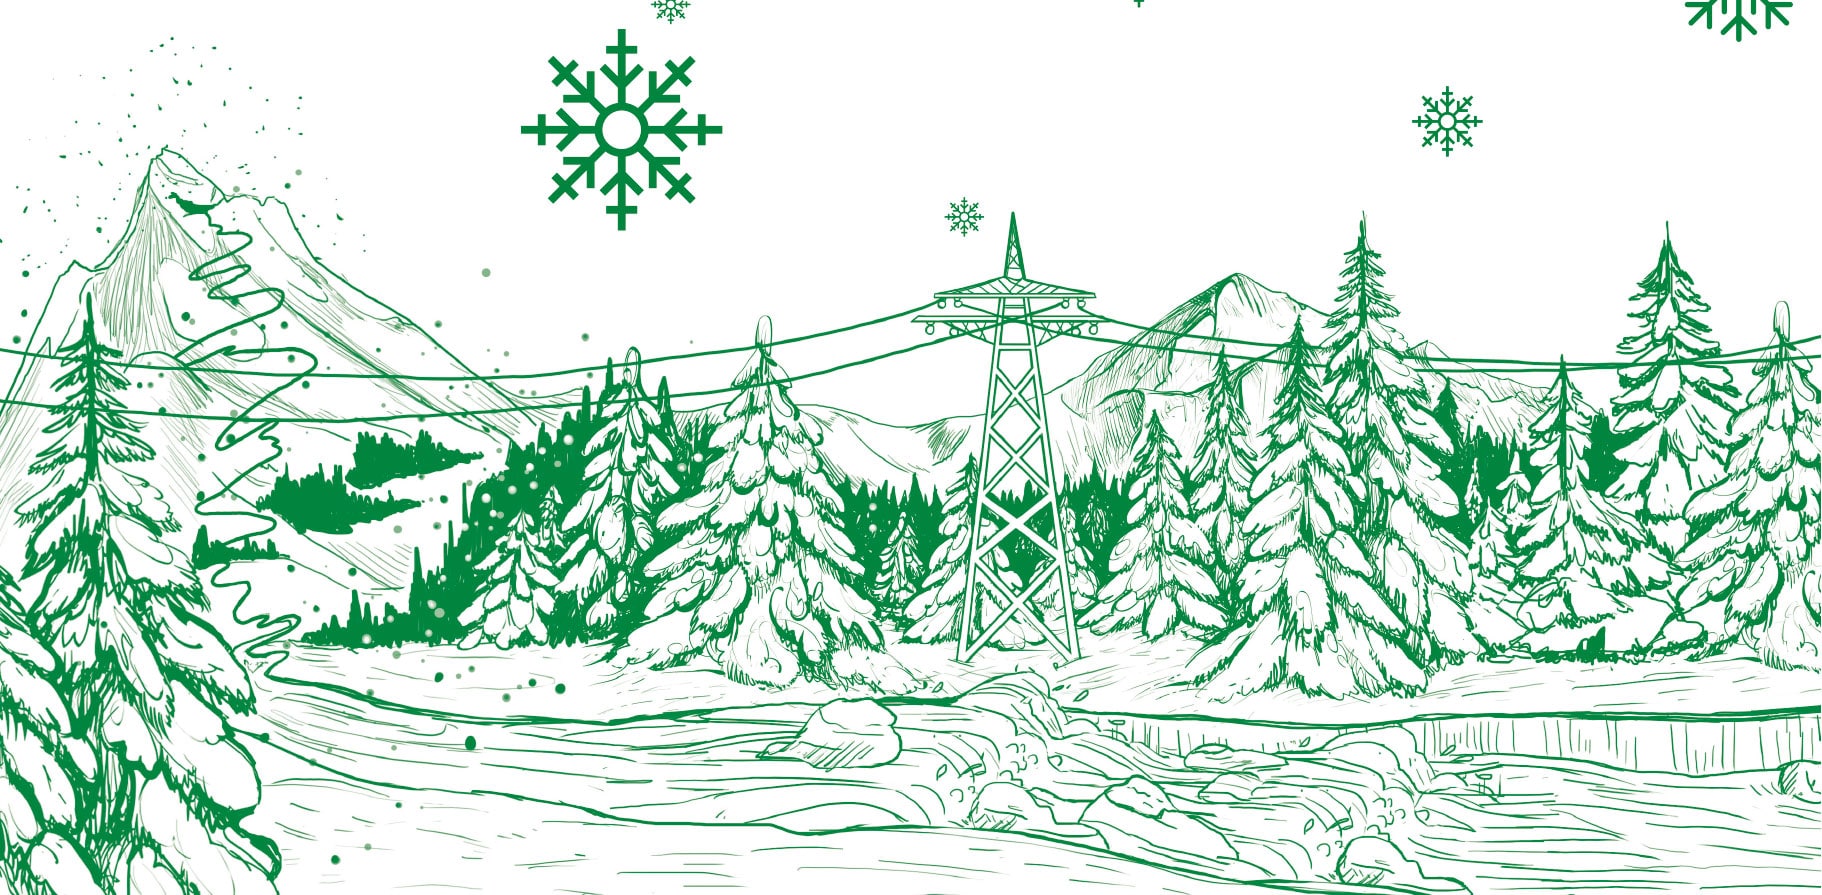 Zeichnung: Landschaft, Berge, Fluss, Strommast, Schneeflocken alles in grün weiß